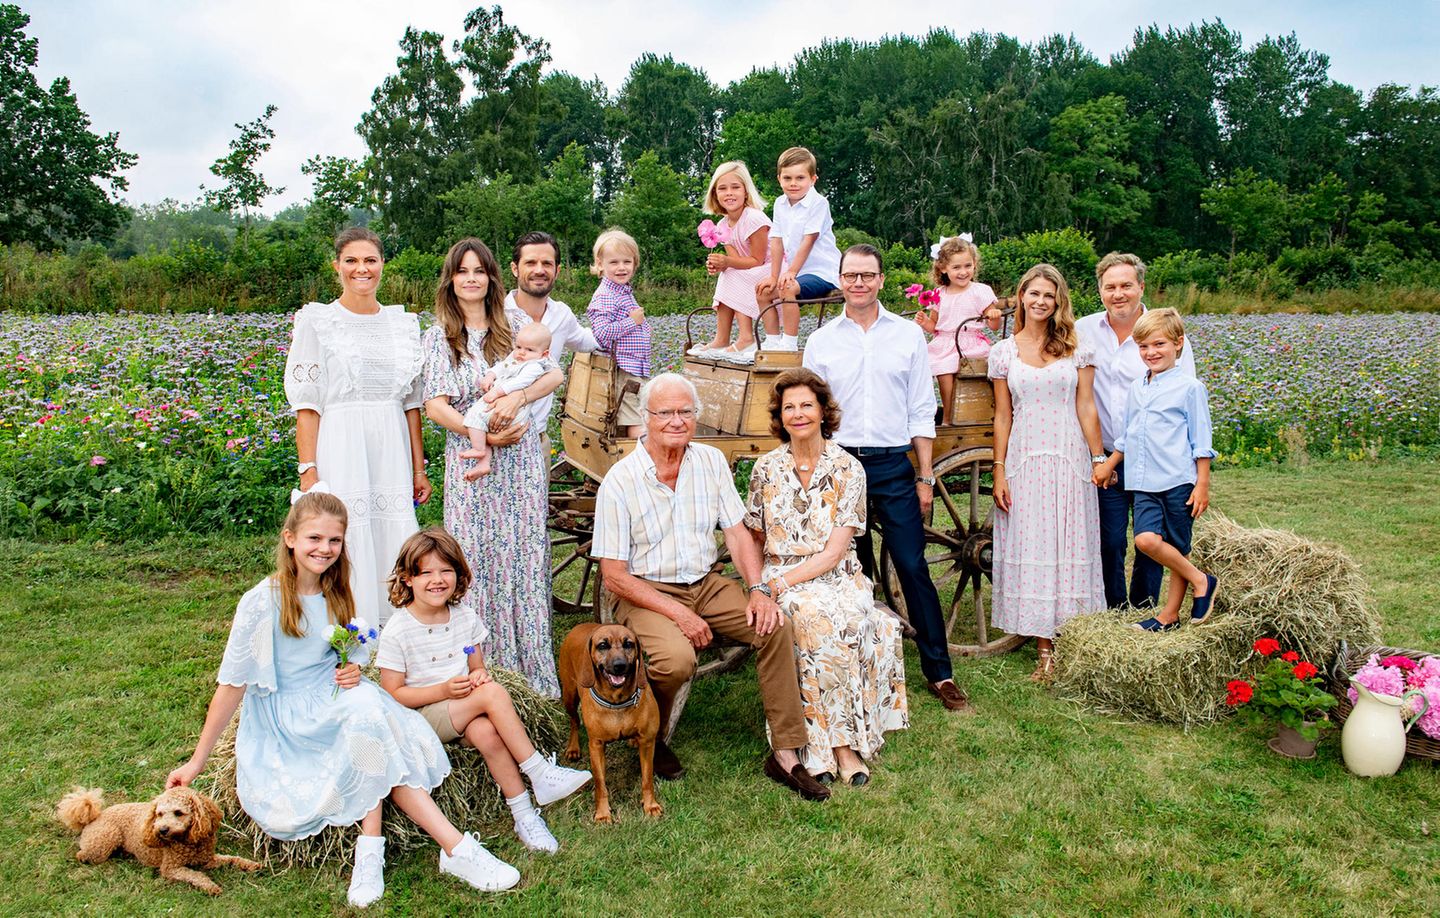 23. Juli 2021  Was für ein schönes Porträt der schwedischen Königsfamilie! Für ein neues Bild der gesamten Familie haben sich die Royals im Sommerurlaub auf Öland von ihrem Hoffotografen ablichten lassen. Das letzte Foto dieser Art liegt schon ein paar Jahre zurück und in der Zwischenzeit sind einige royale Sprösslinge dazu gekommen. König Carl Gustaf und Königin Silvia haben das Wiedersehen mit ihren Liebsten lange herbeigesehnt und freuen sich umso mehr, den Sommer auf der "Insel der Sonne und Winde" gemeinsam zu verbringen.